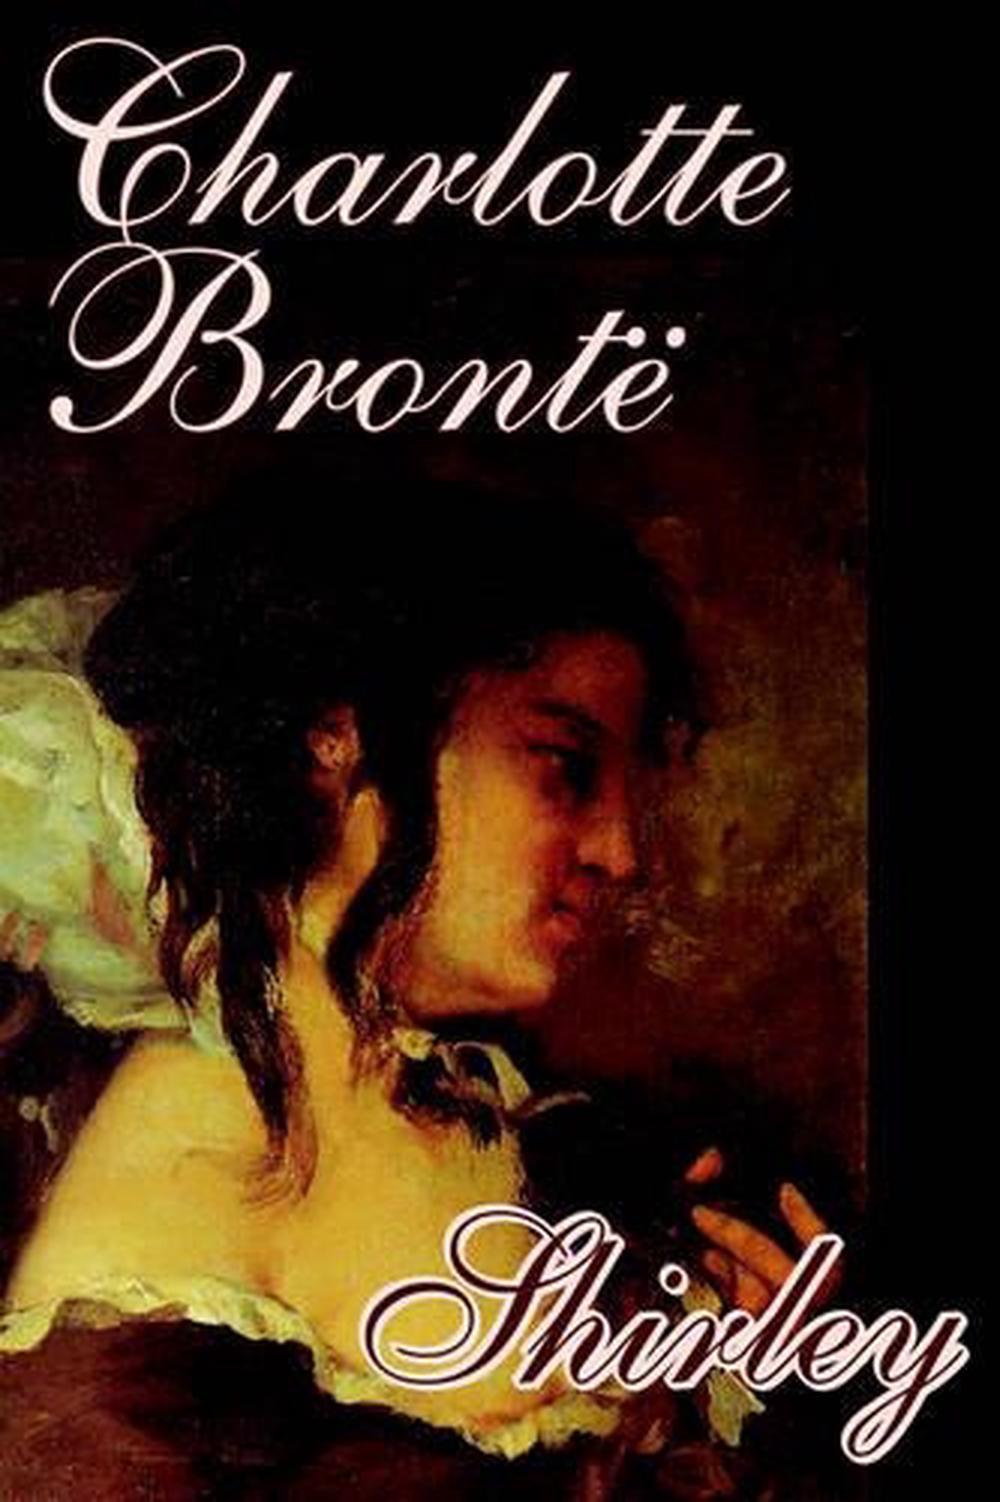 1849 novel charlotte bronte